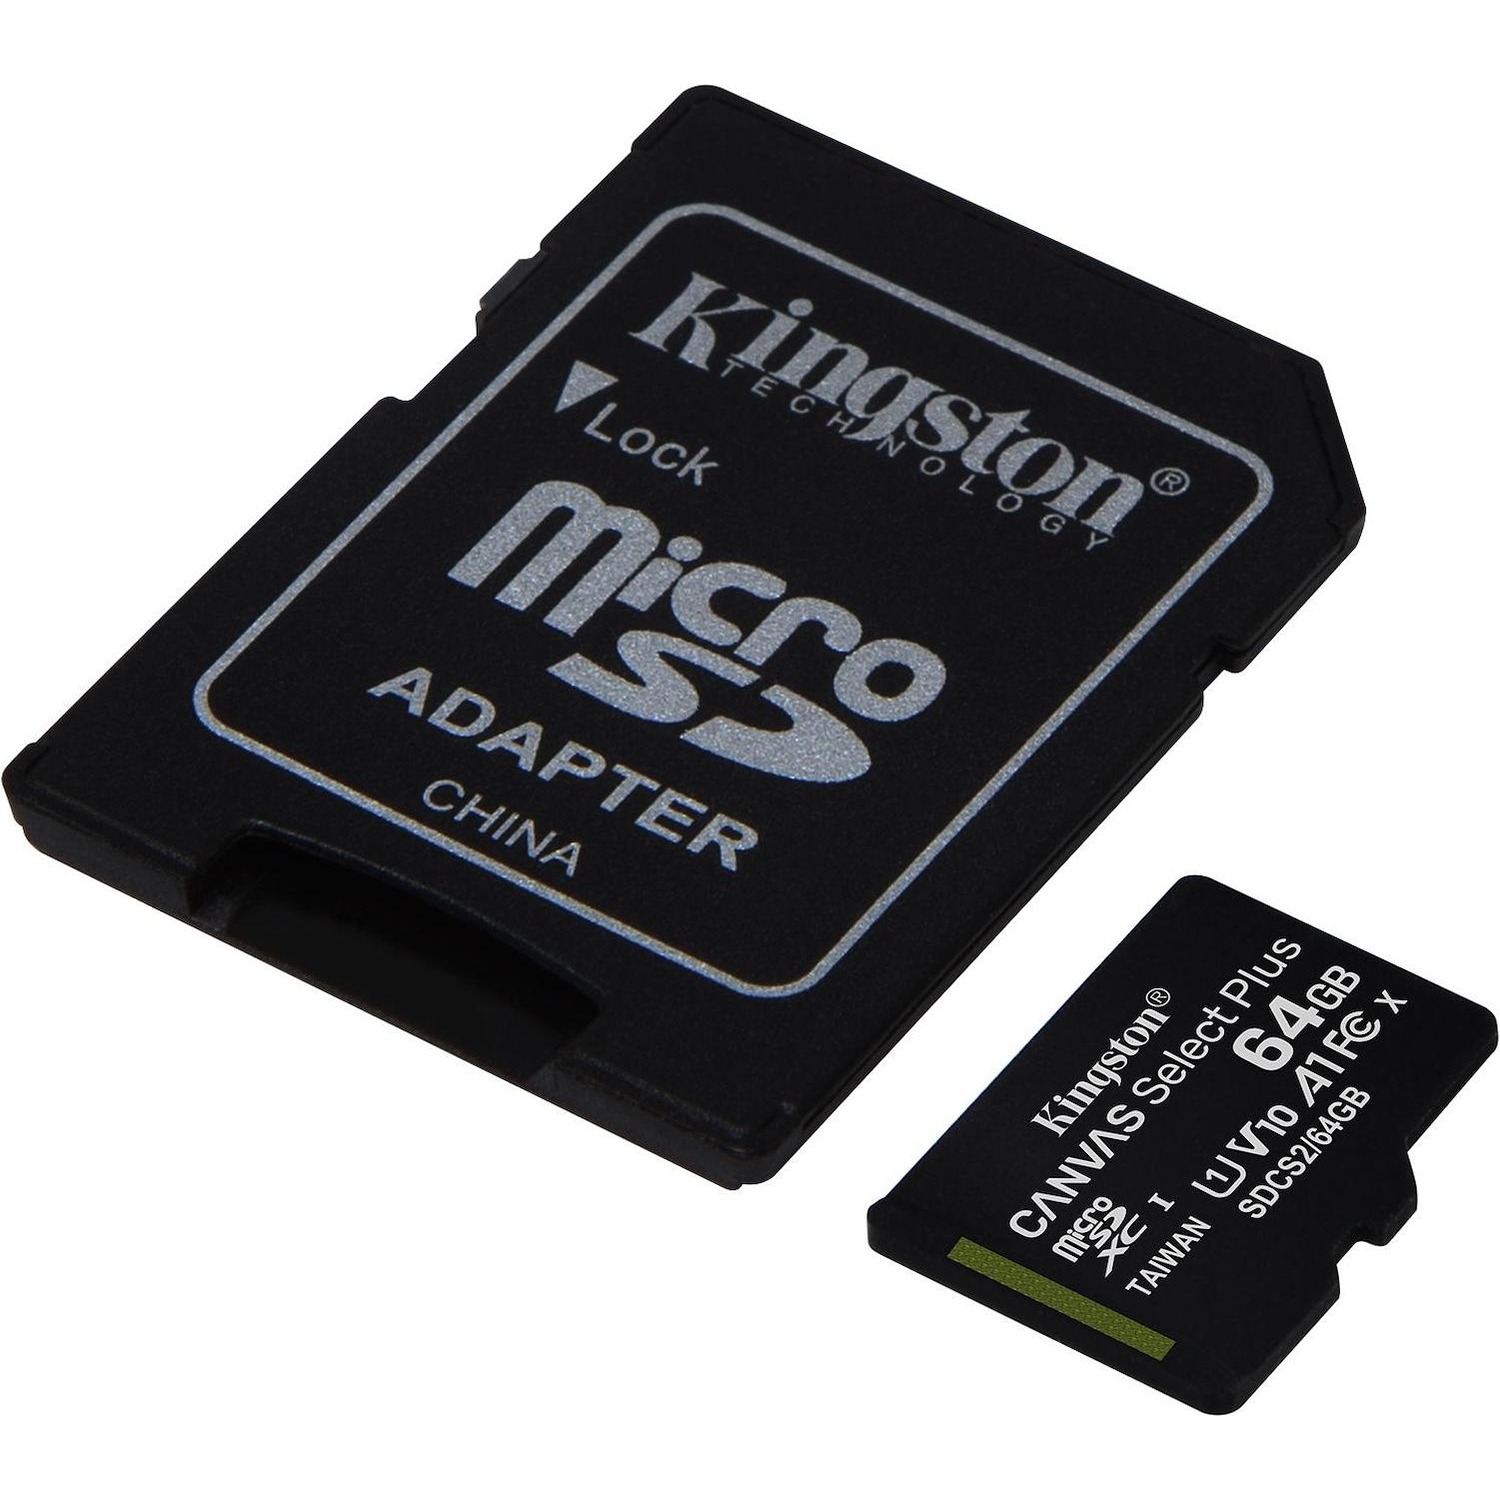 Immagine per MicroSD Kingston 64GB con adattatore da DIMOStore